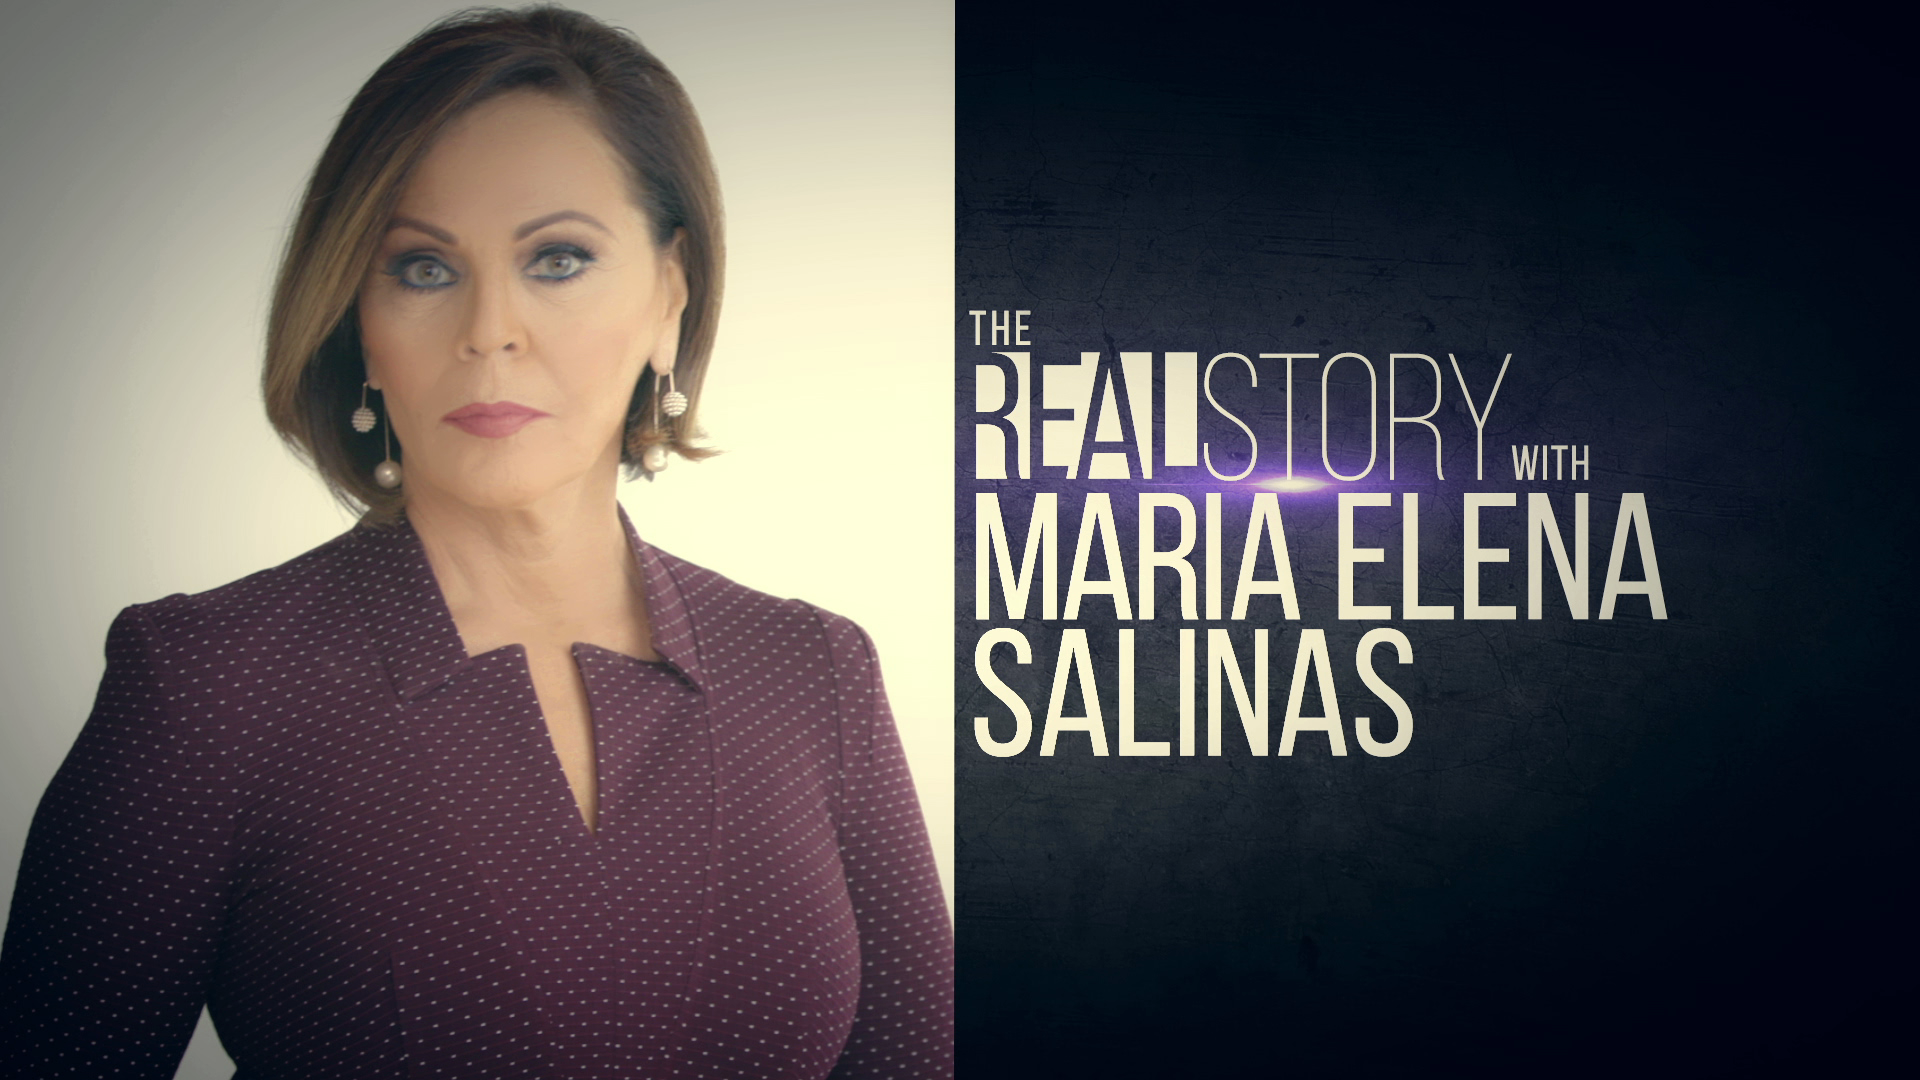 THE REAL STORY WITH MARIA ELENA SALINAS